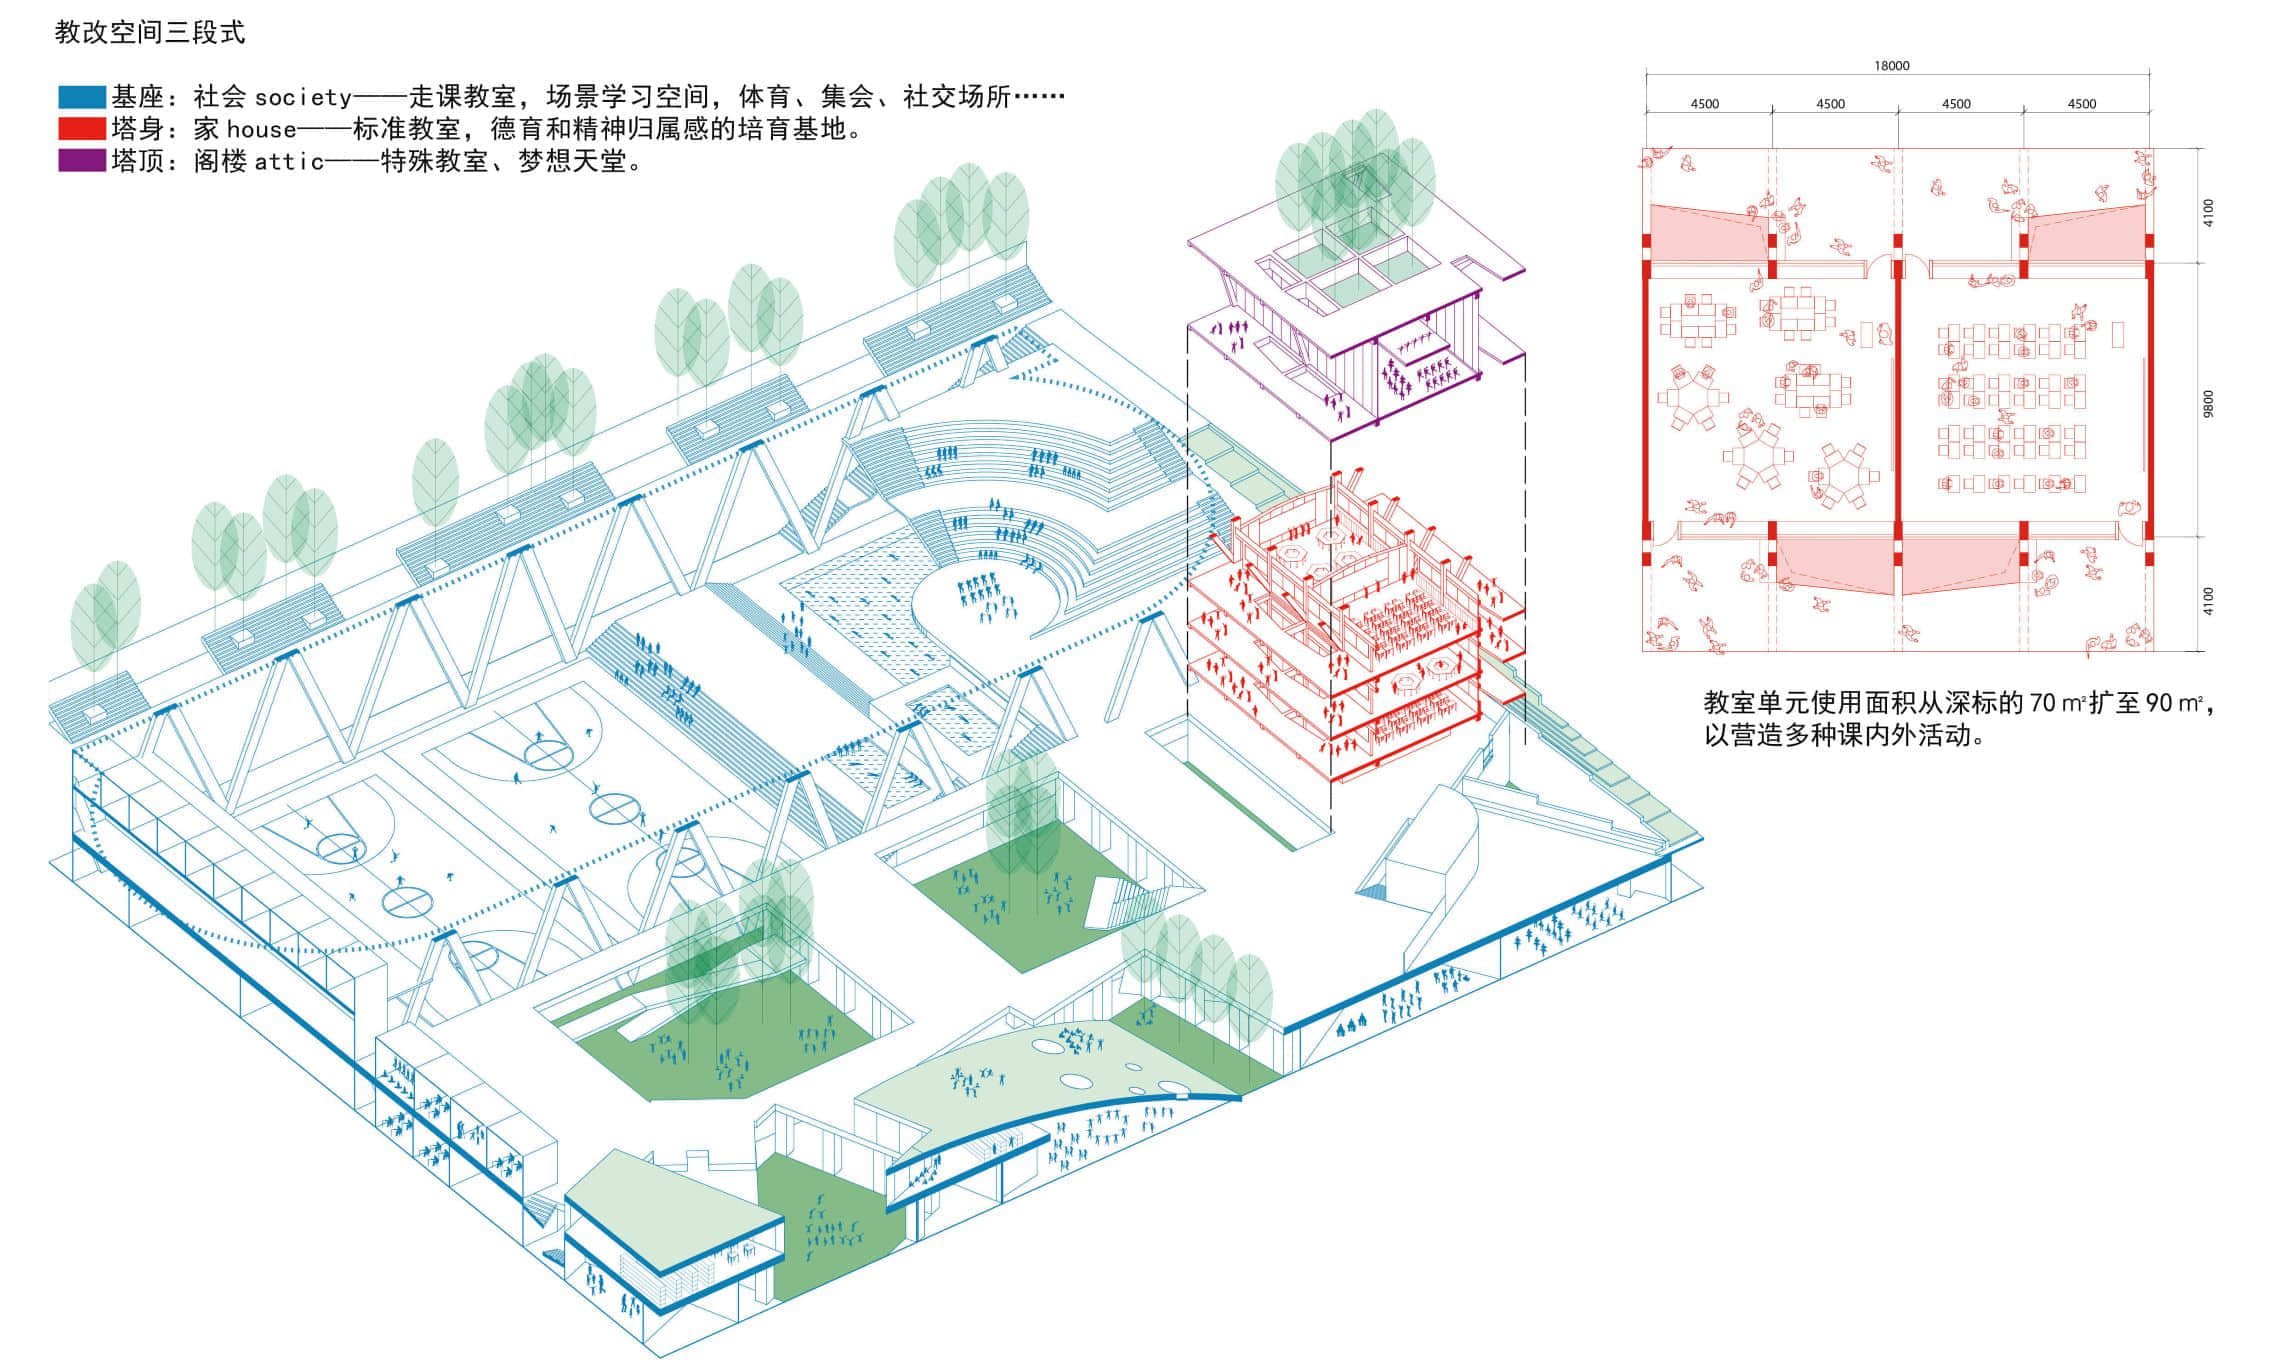 图38. 朱涛的人民小学参赛案中提出的三段式剖面轴测示意图